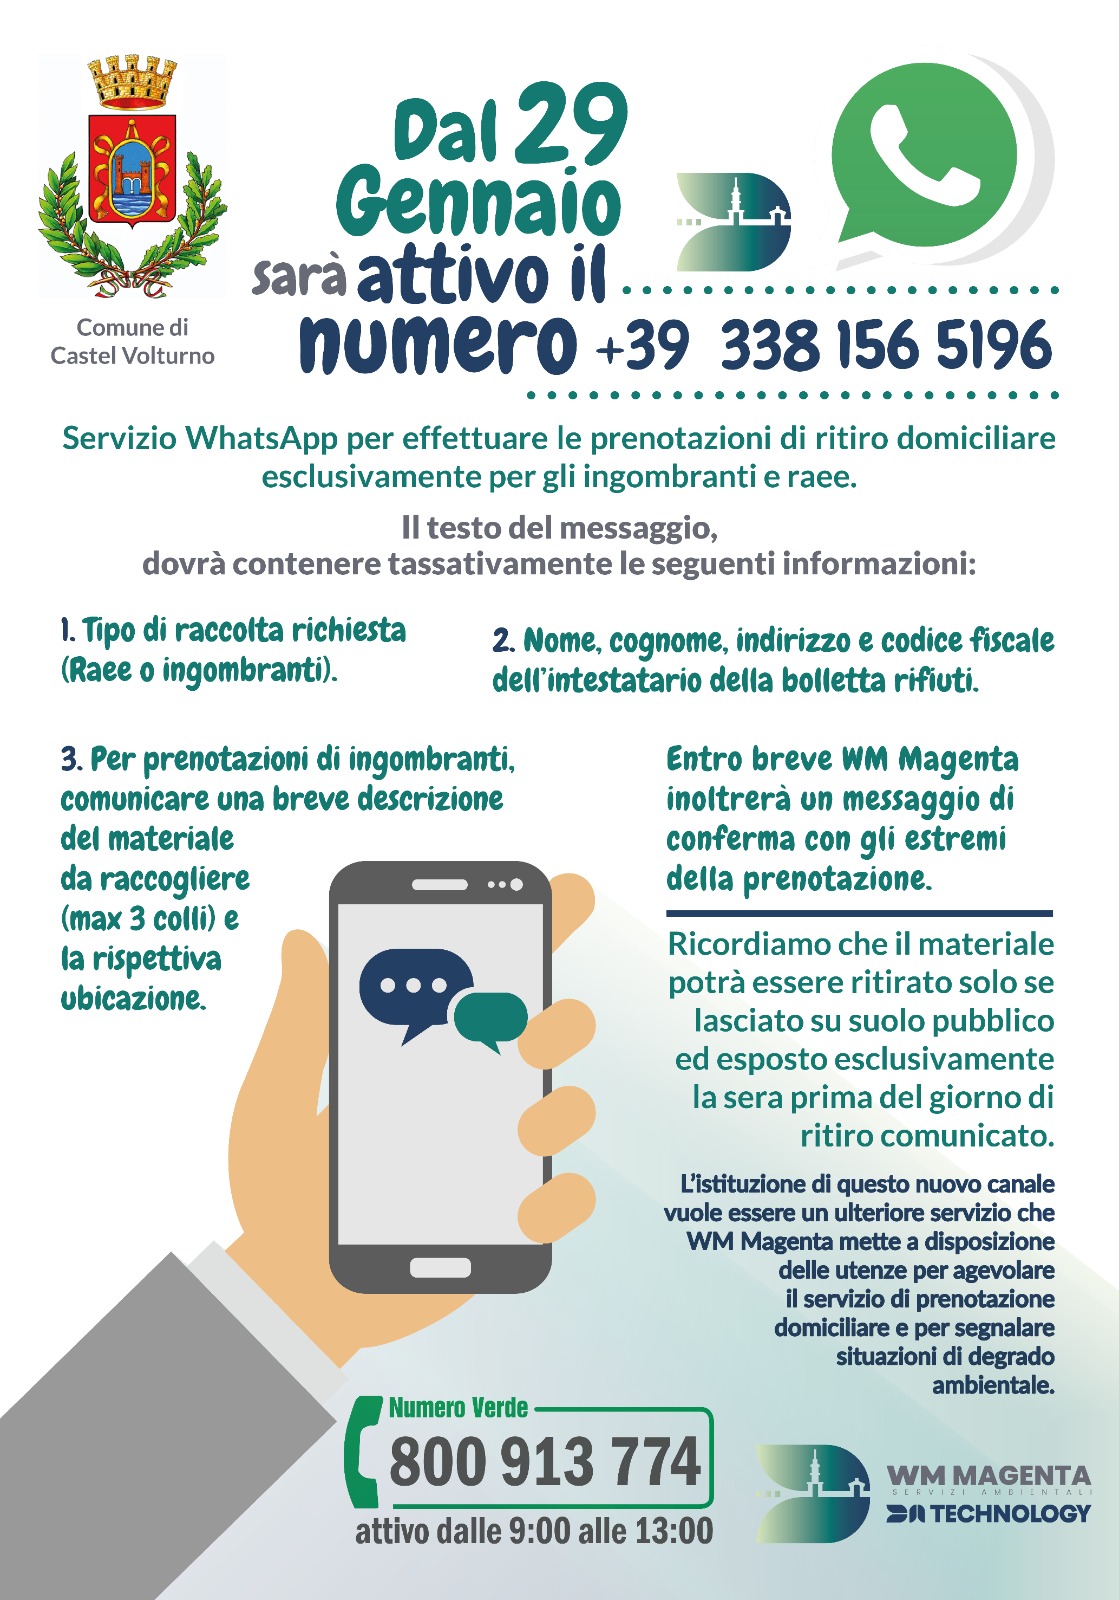 Servizio WhatsApp Per Effettuare Le Prenotazioni Di Ritiro Domiciliare Esclusivamente Per Gli Ingombranti E Raee